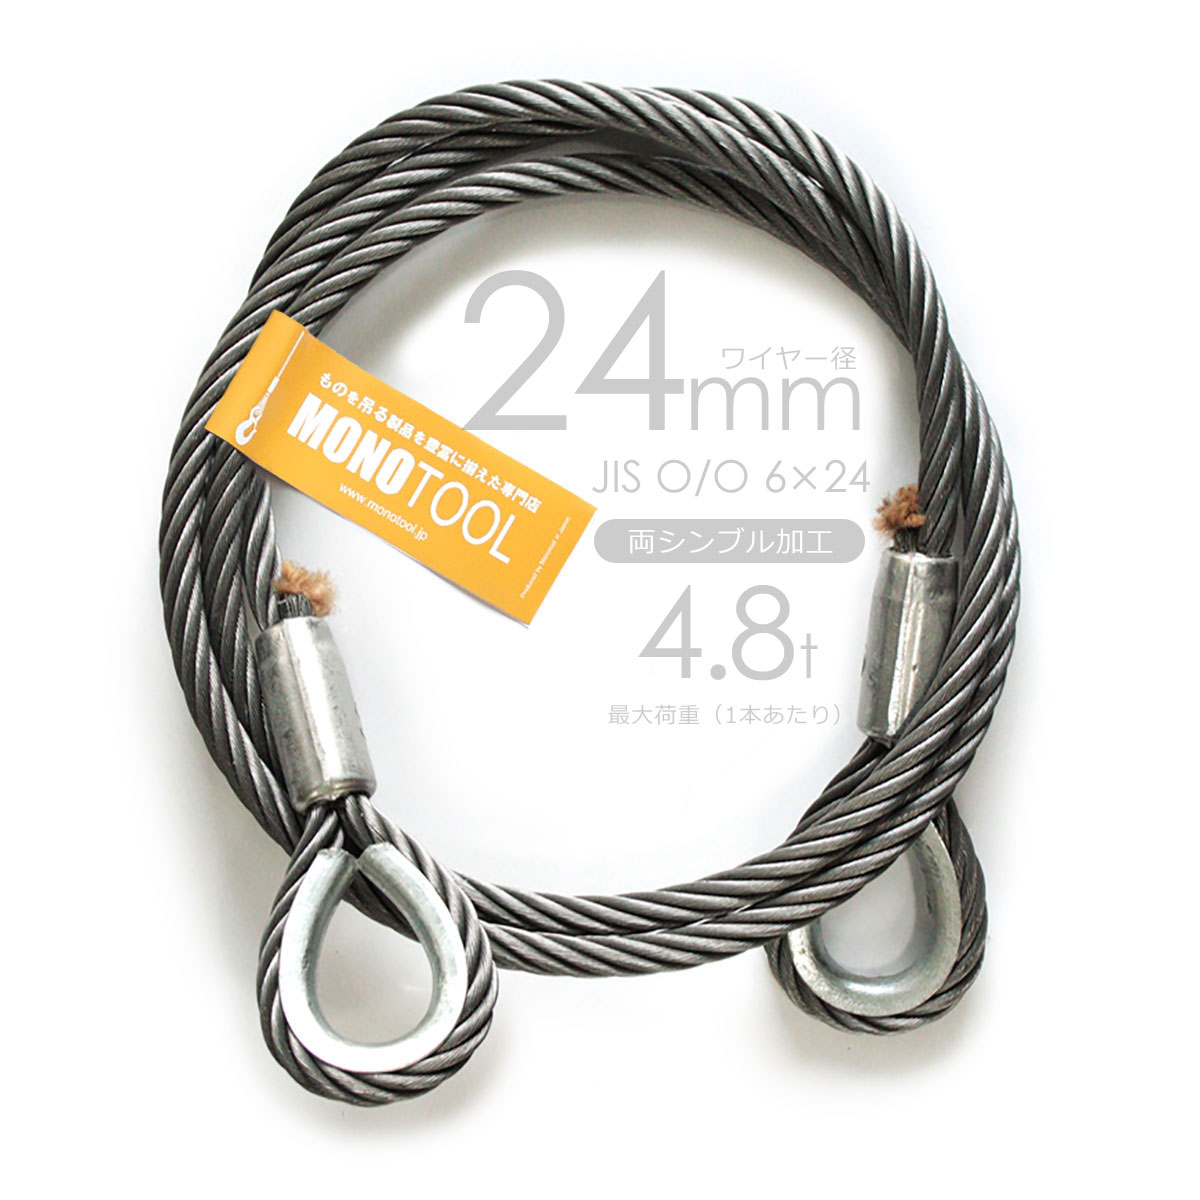 編み込みワイヤー JIS黒(O O) 34mm（11分）x6.5m 玉掛けワイヤーロープ 2本組 フレミッシュ 玉掛ワイヤー - 3